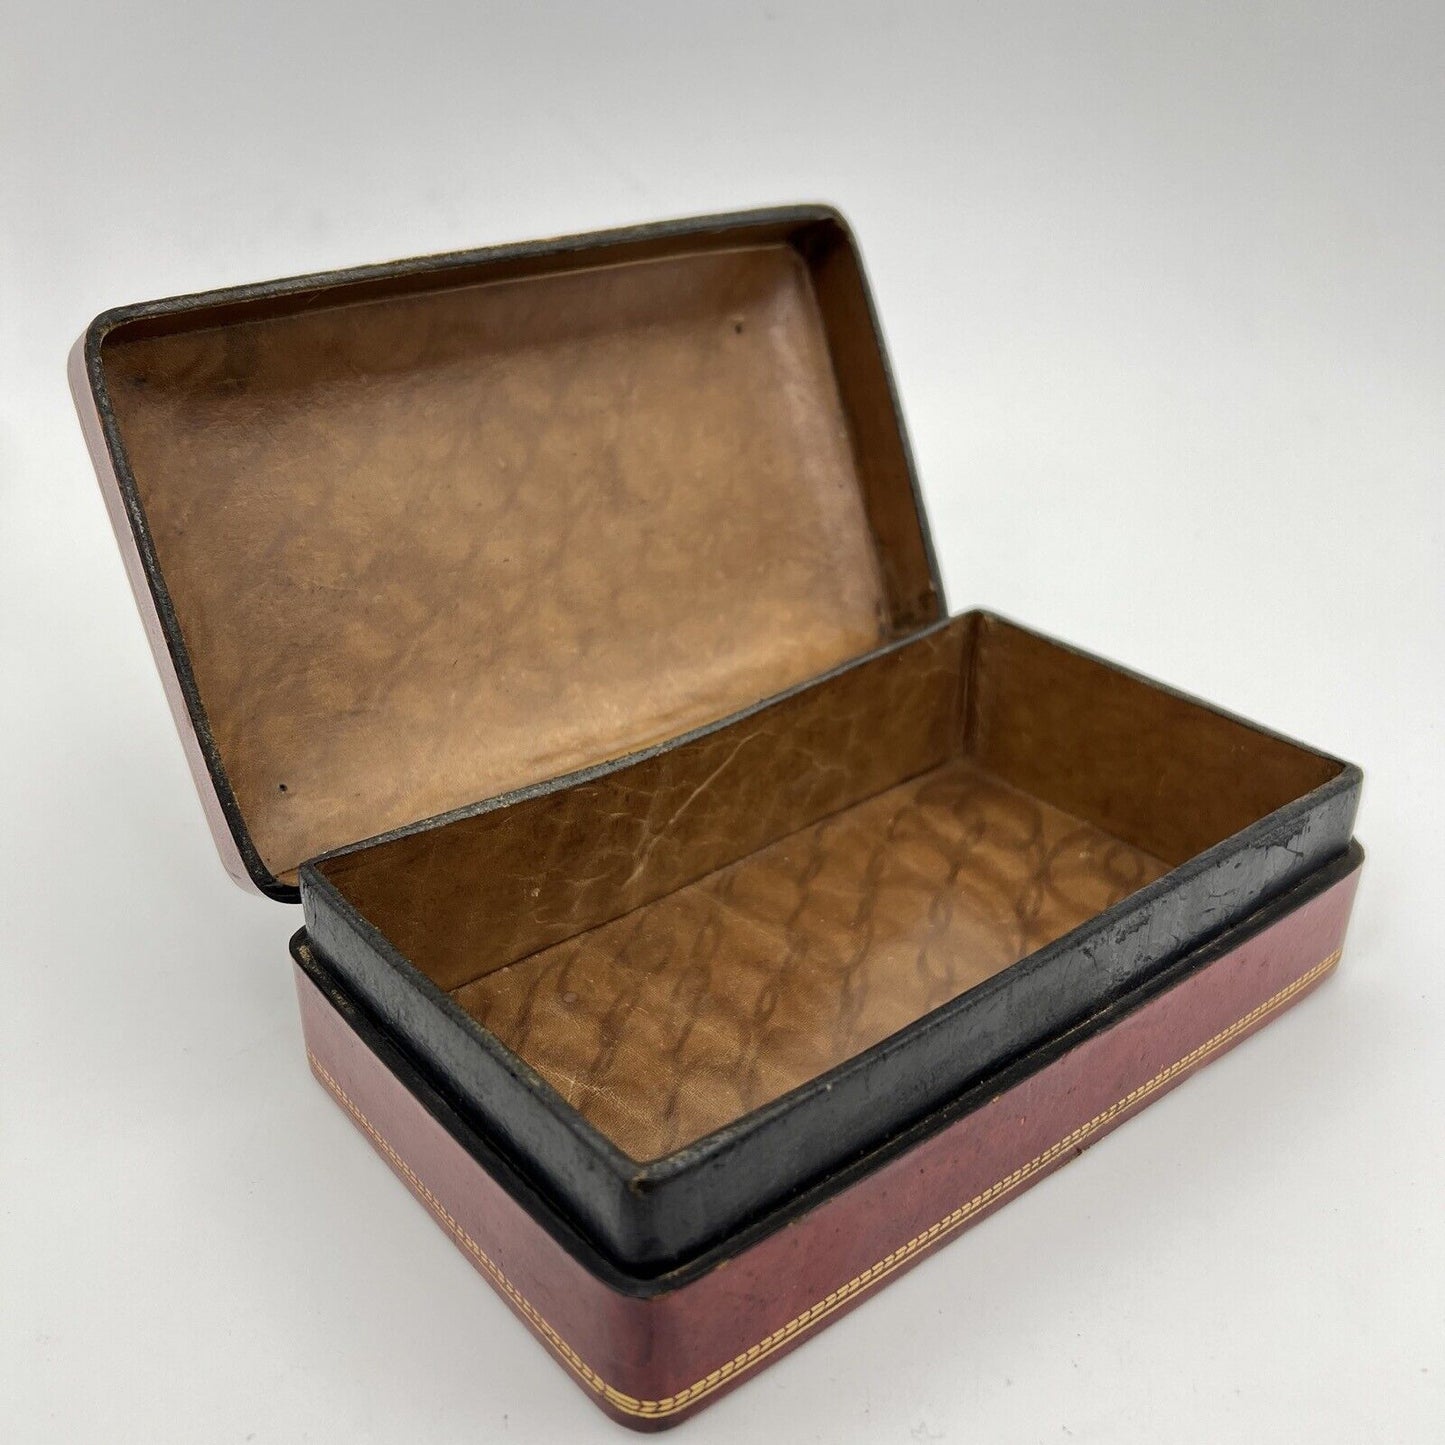 Scatola antica in pelle bordeaux da scrivania scatolina porta oggetti penne